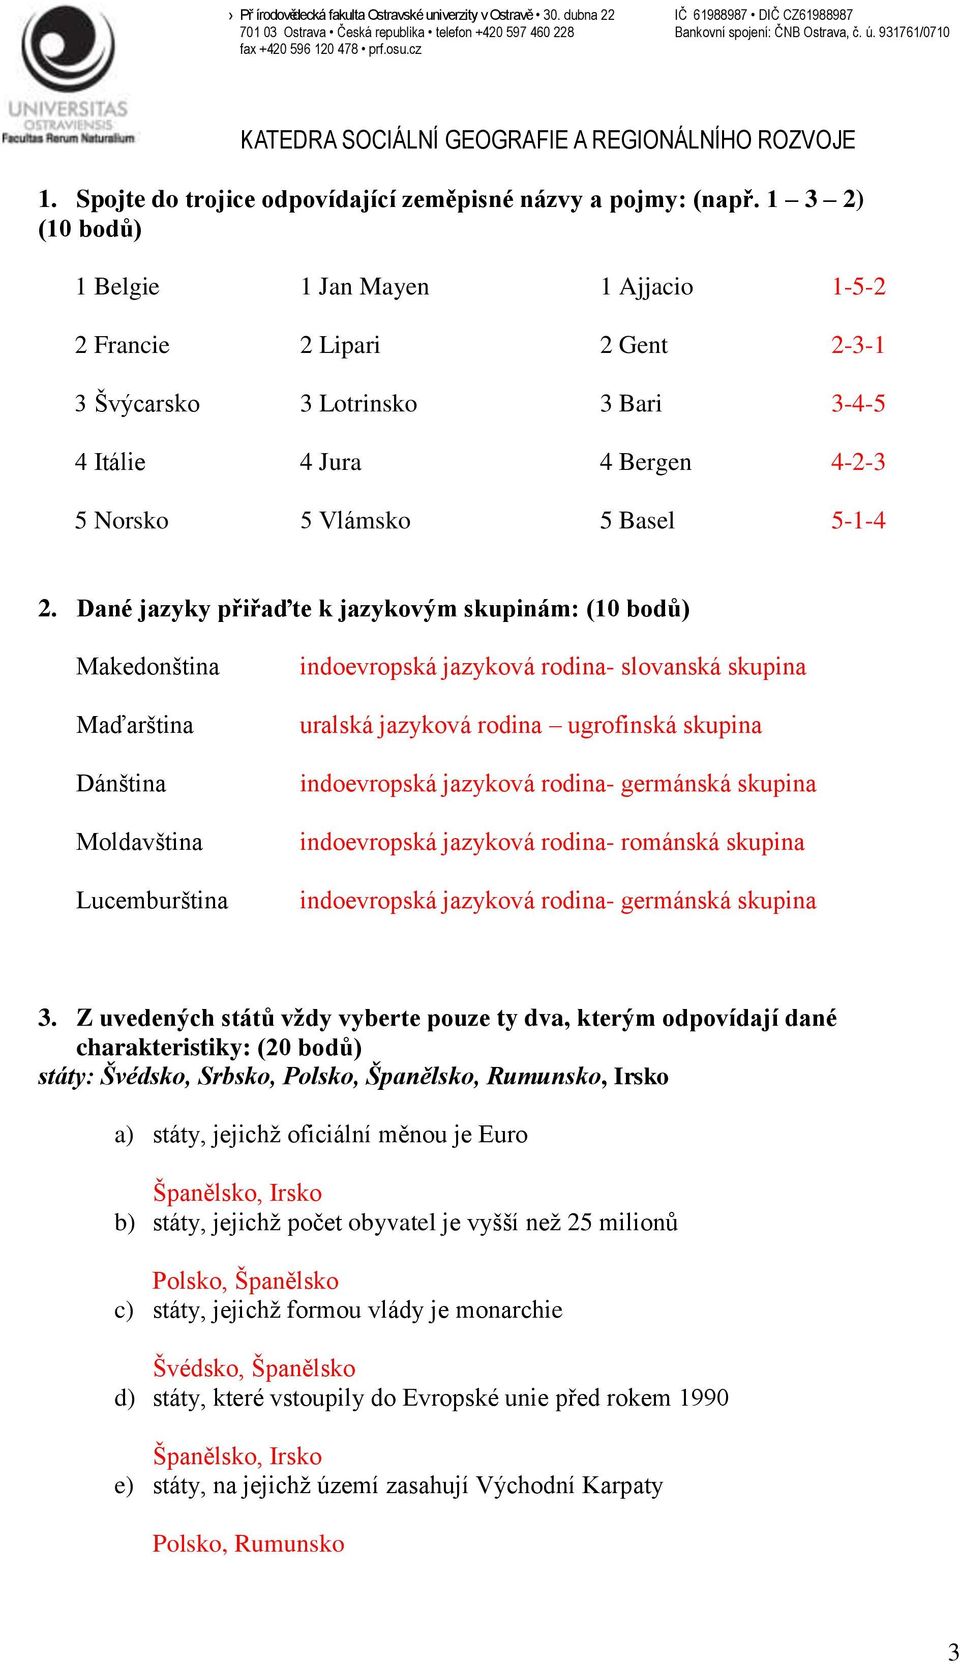 Dané jazyky přiřaďte k jazykovým skupinám: (10 bodů) Makedonština Maďarština Dánština Moldavština Lucemburština indoevropská jazyková rodina- slovanská skupina uralská jazyková rodina ugrofinská